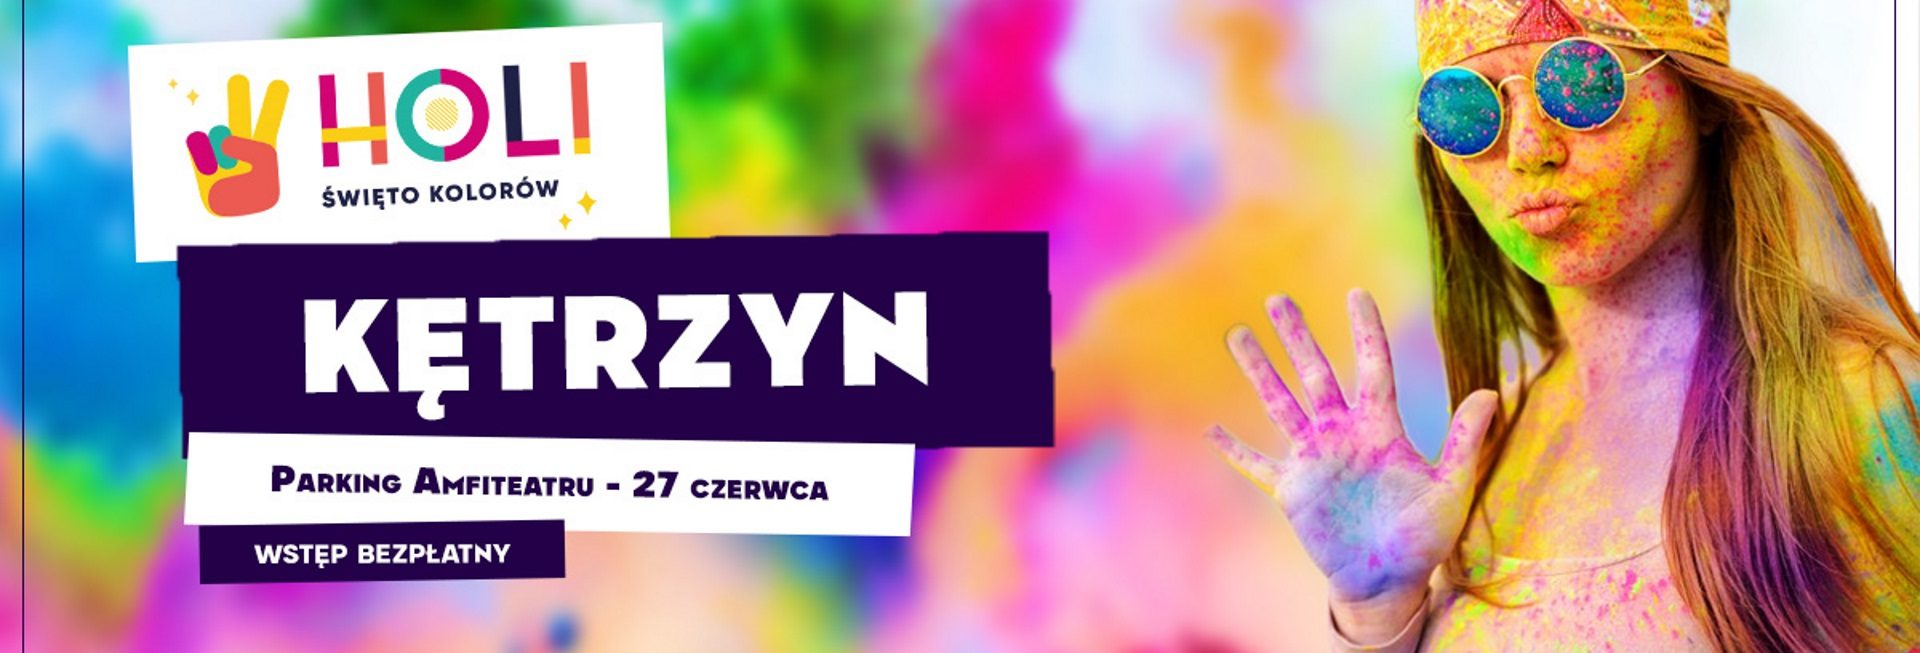 Plakat graficzny zapraszający do Kętrzyna na imprezę Holi Święto Kolorów – Kętrzyn 2021. Na plakacie widzimy dziewczynę - uczestniczkę imprezy całą ubrudzoną w kolorowym proszku.  